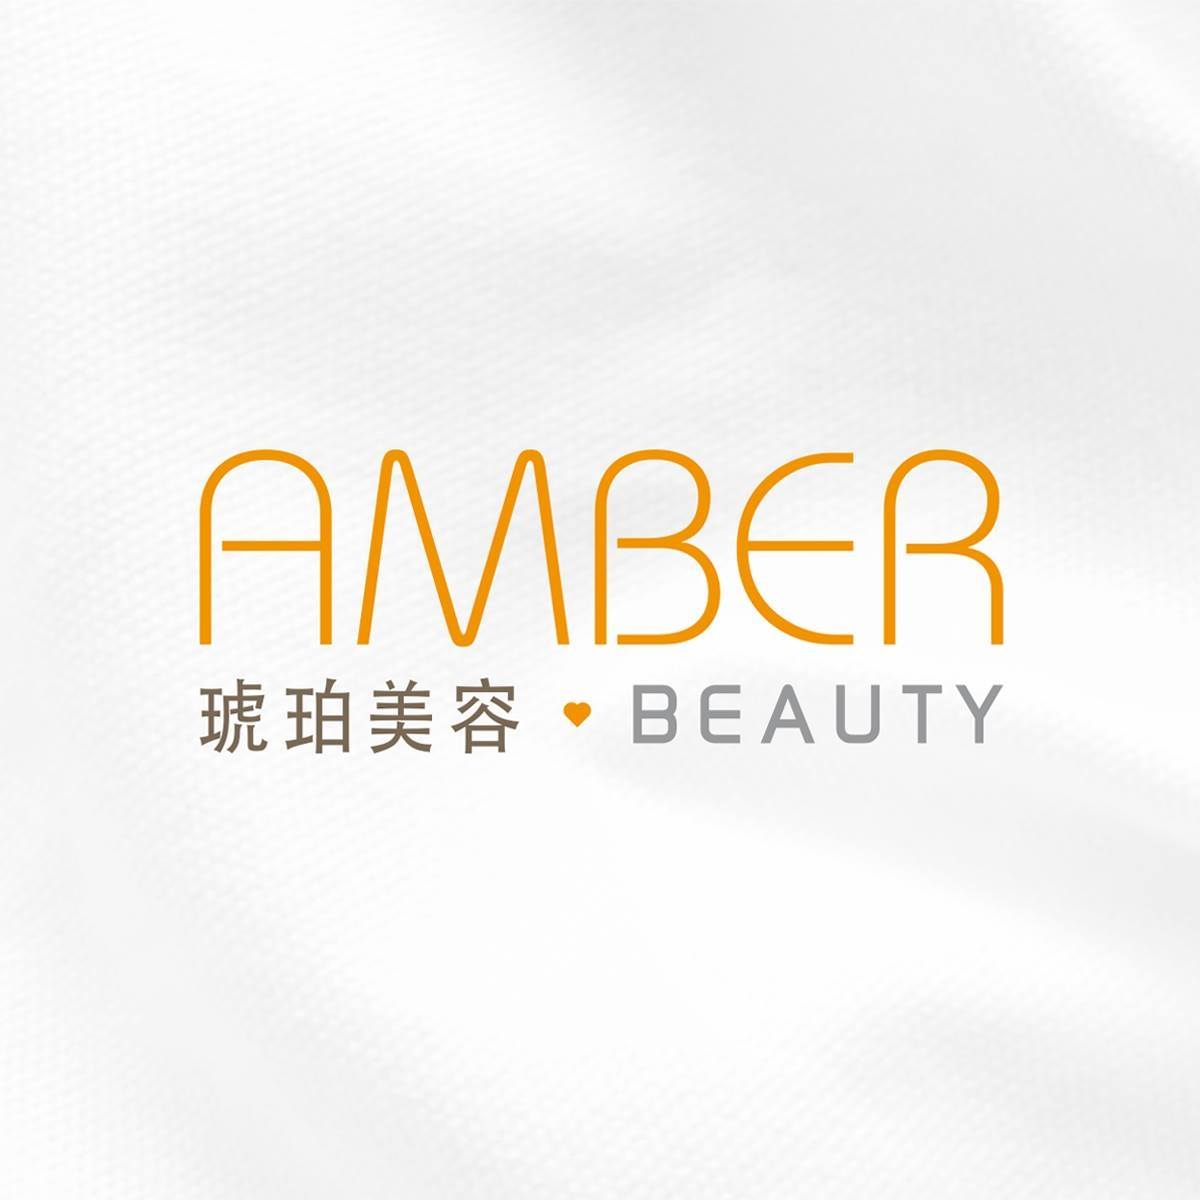 香港美容網 Hong Kong Beauty Salon 美容院 / 美容師: 琥珀美容 Amber Beauty (石門店)